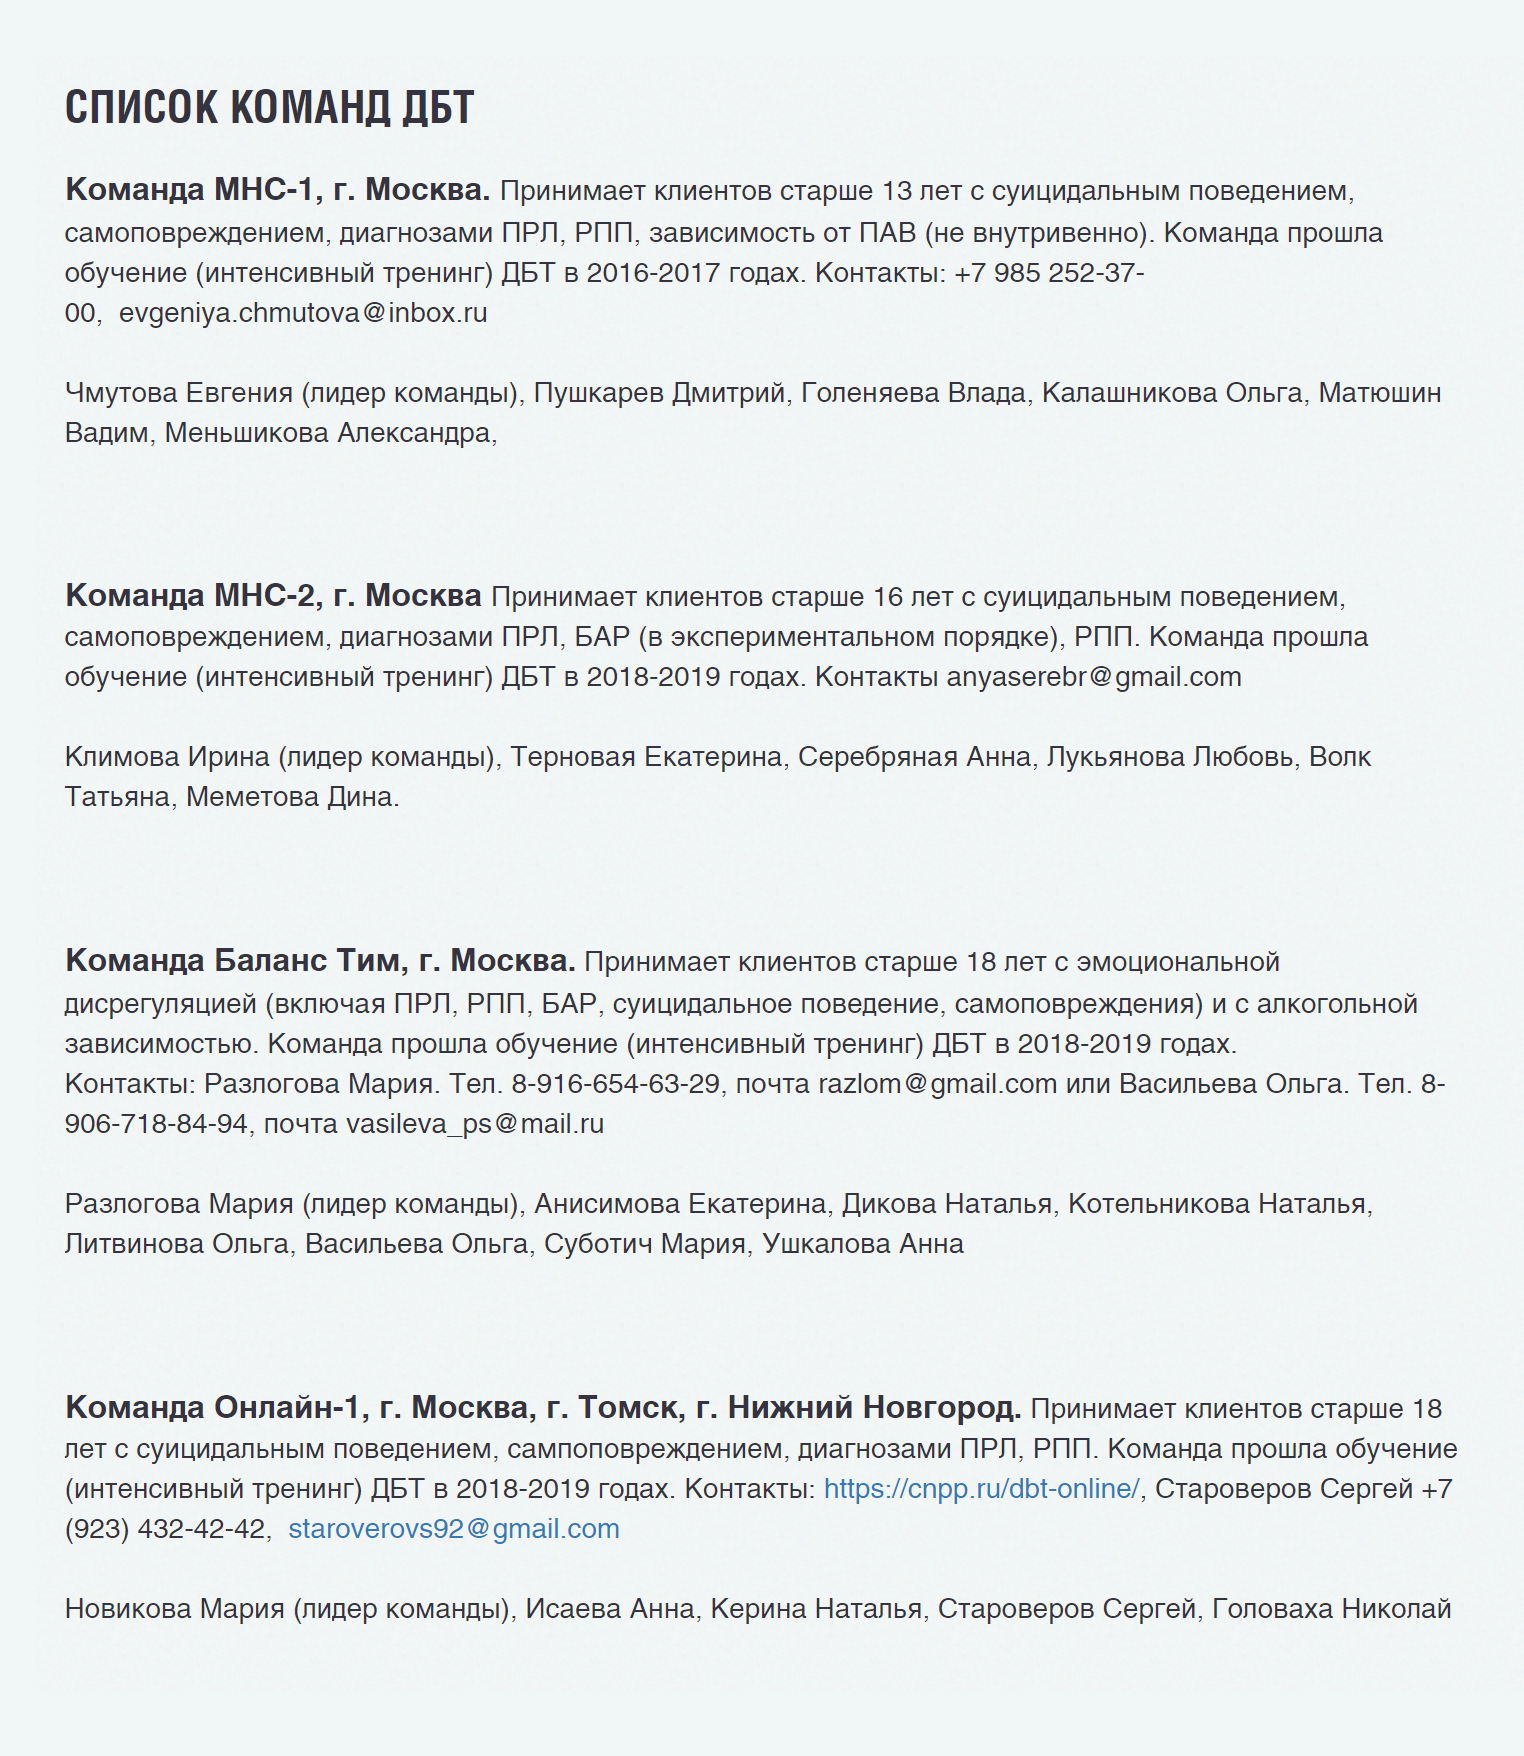 Список команд на сайте российского сообщества ДБТ. К ним можно попробовать присоединиться